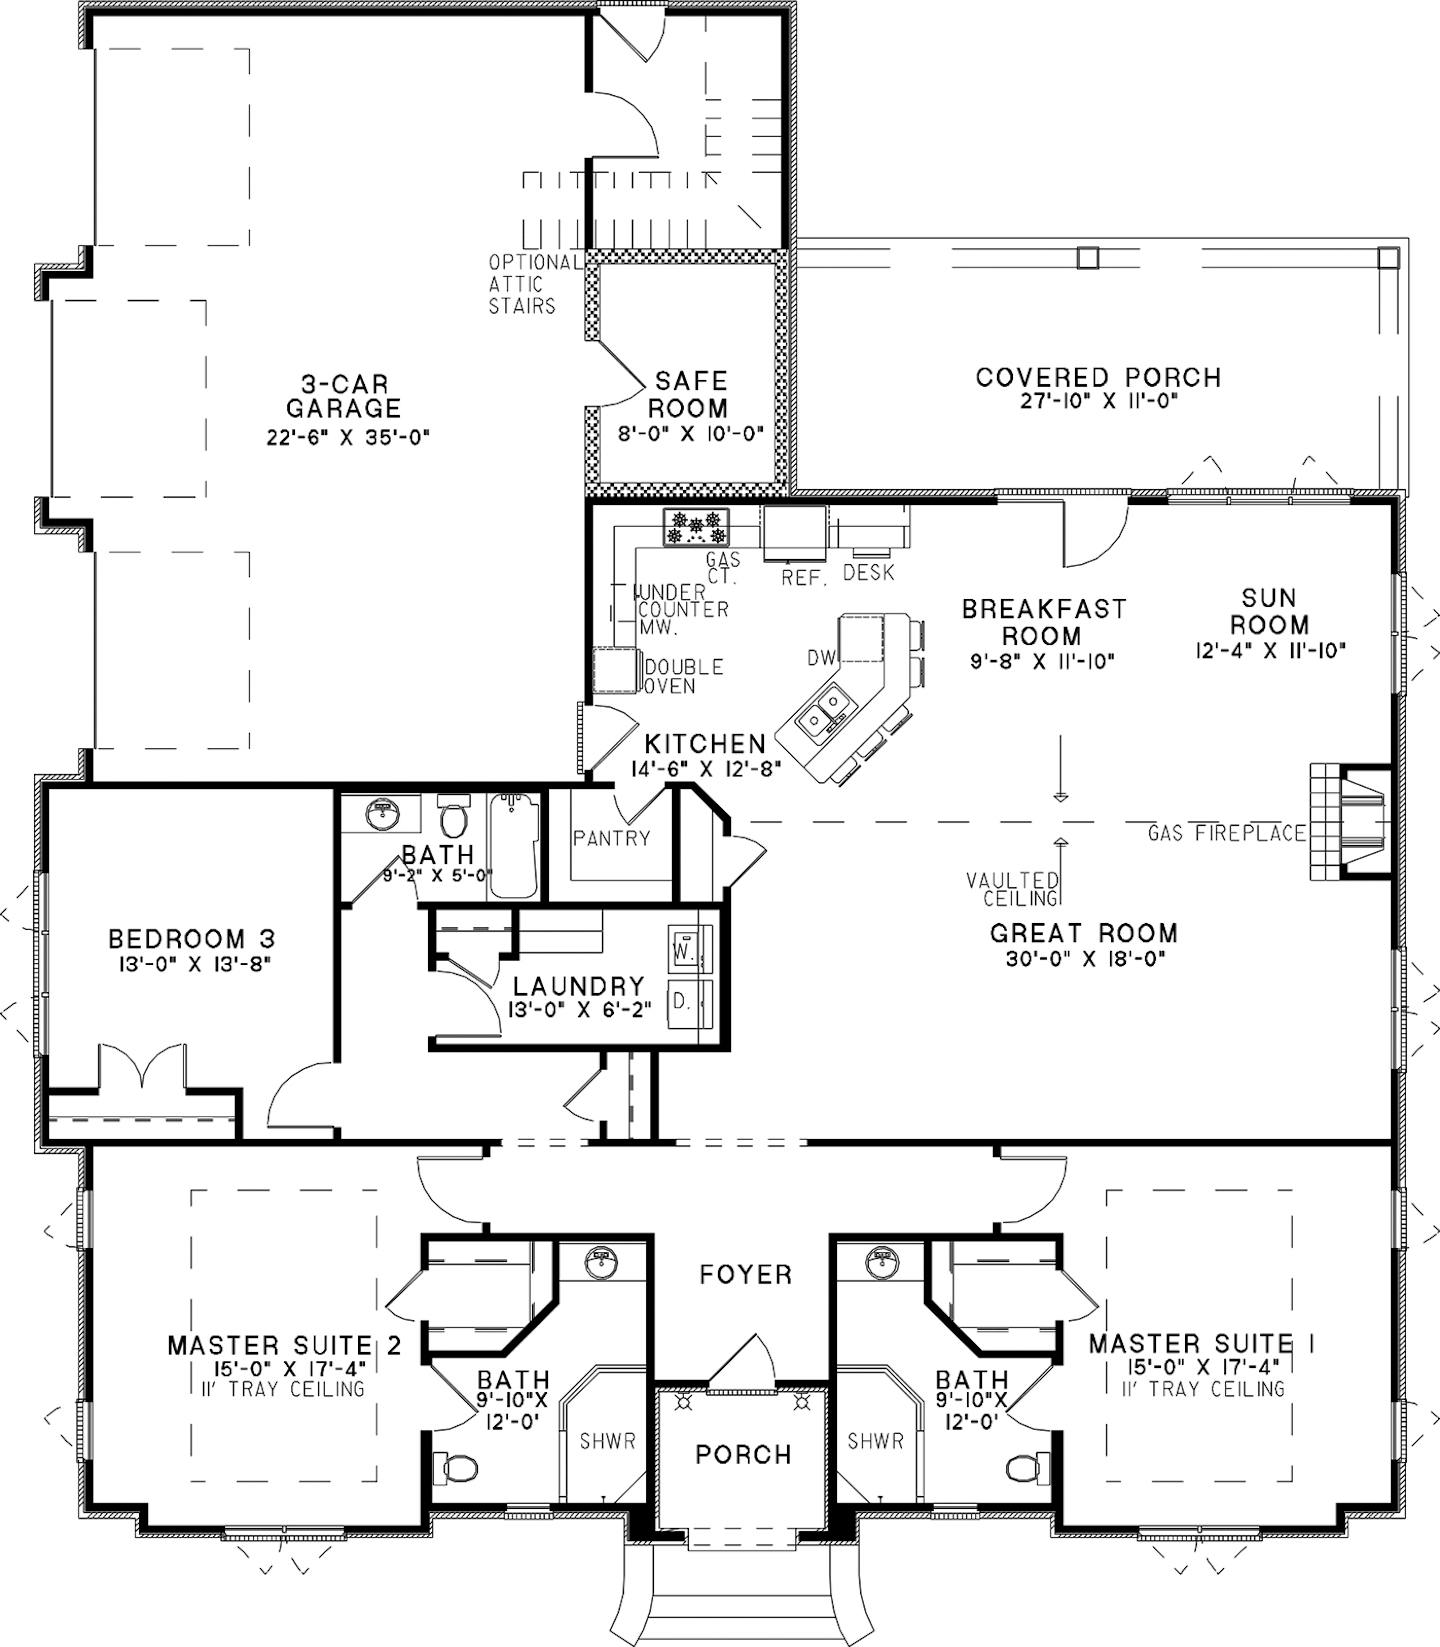 Barndominium Floor Plans with 2 Master Suites – What to Consider |  Barndominium floor plans, Garage floor plans, Barndominium plans